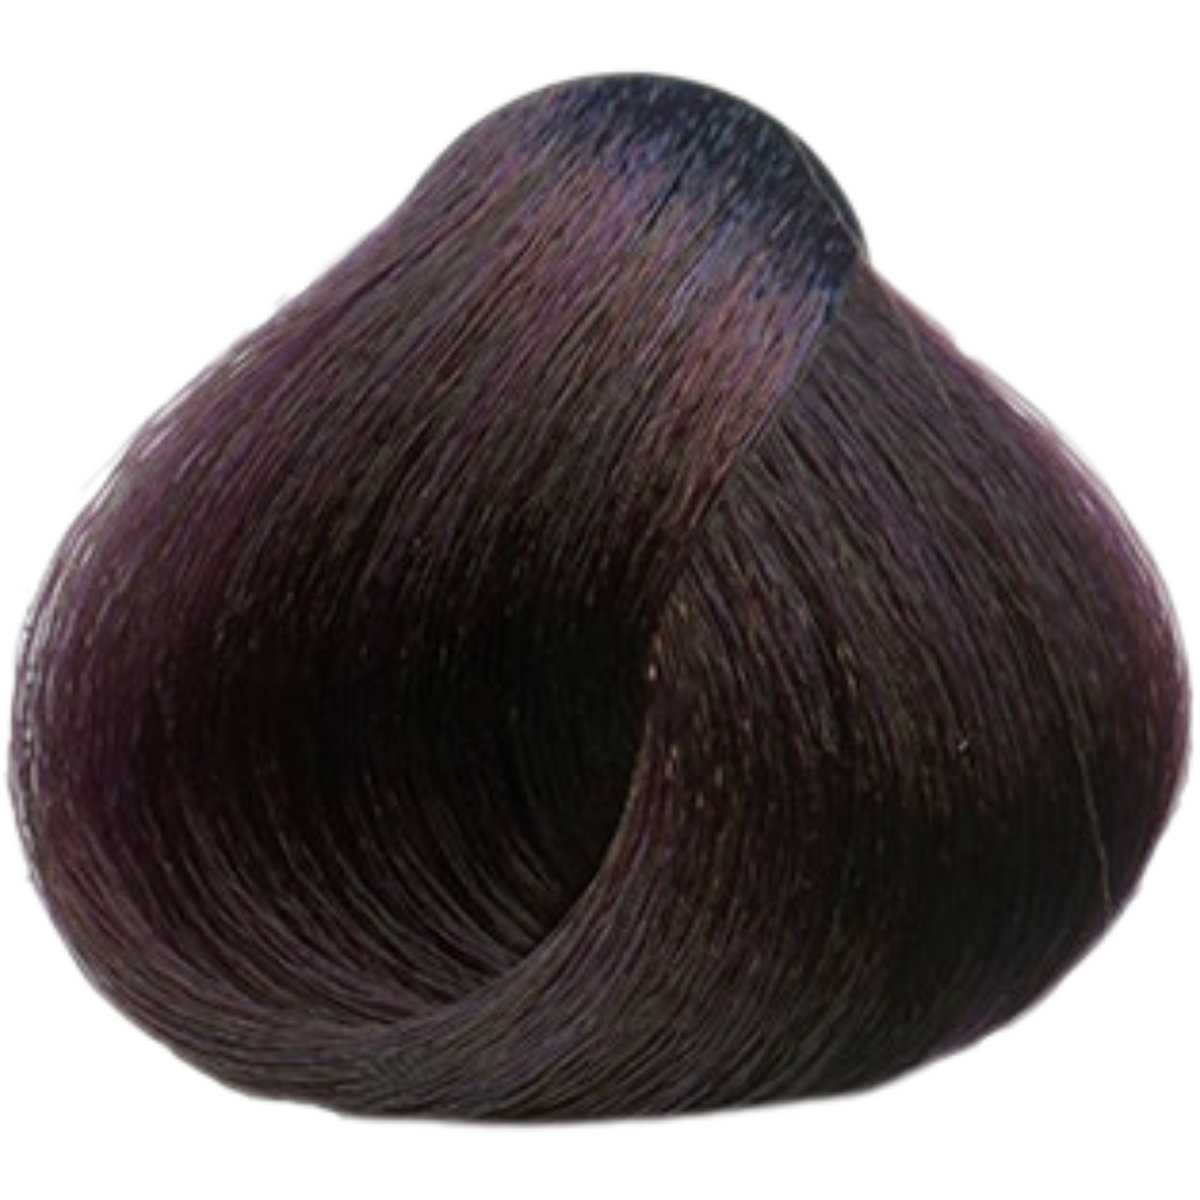 צבע שיער 5.20 LIGHT IRISEE BROWN פארמויטה FarmaVita צבע לשיער 60 גרם